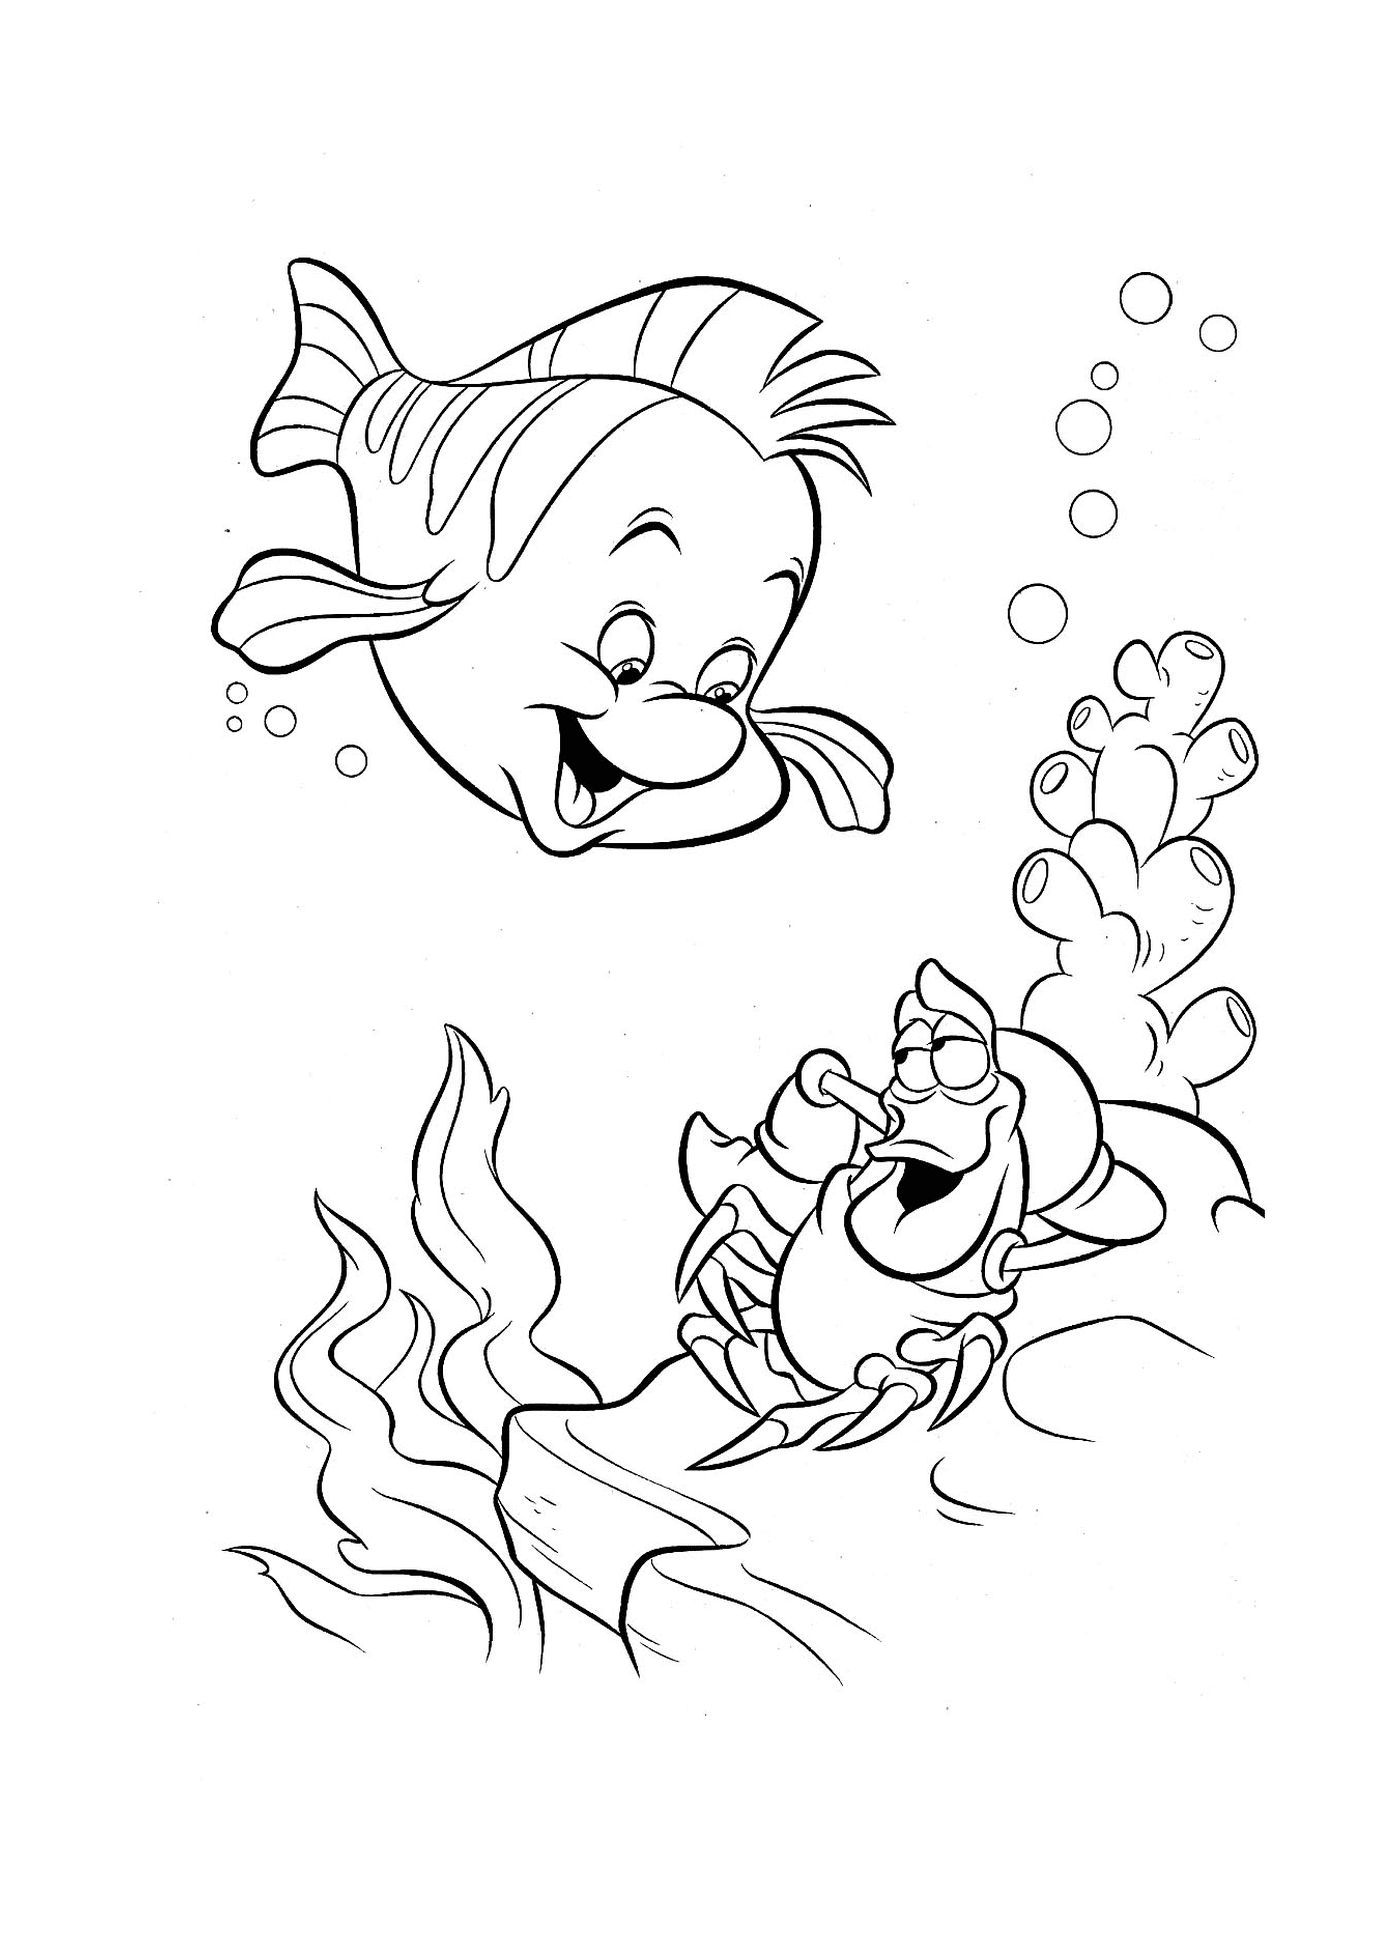  Un pez y un cangrejo nadan juntos 